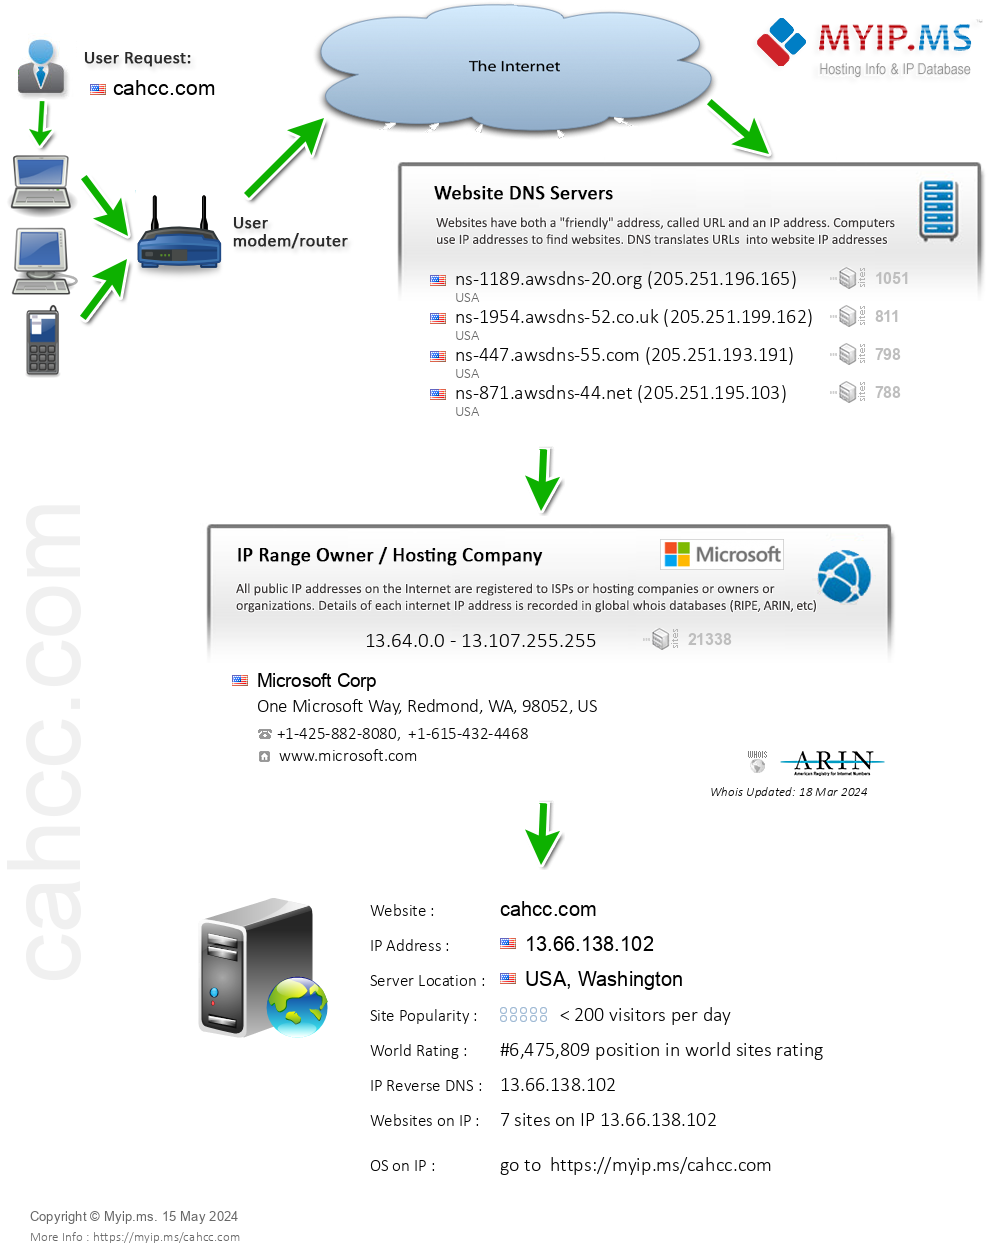 Cahcc.com - Website Hosting Visual IP Diagram